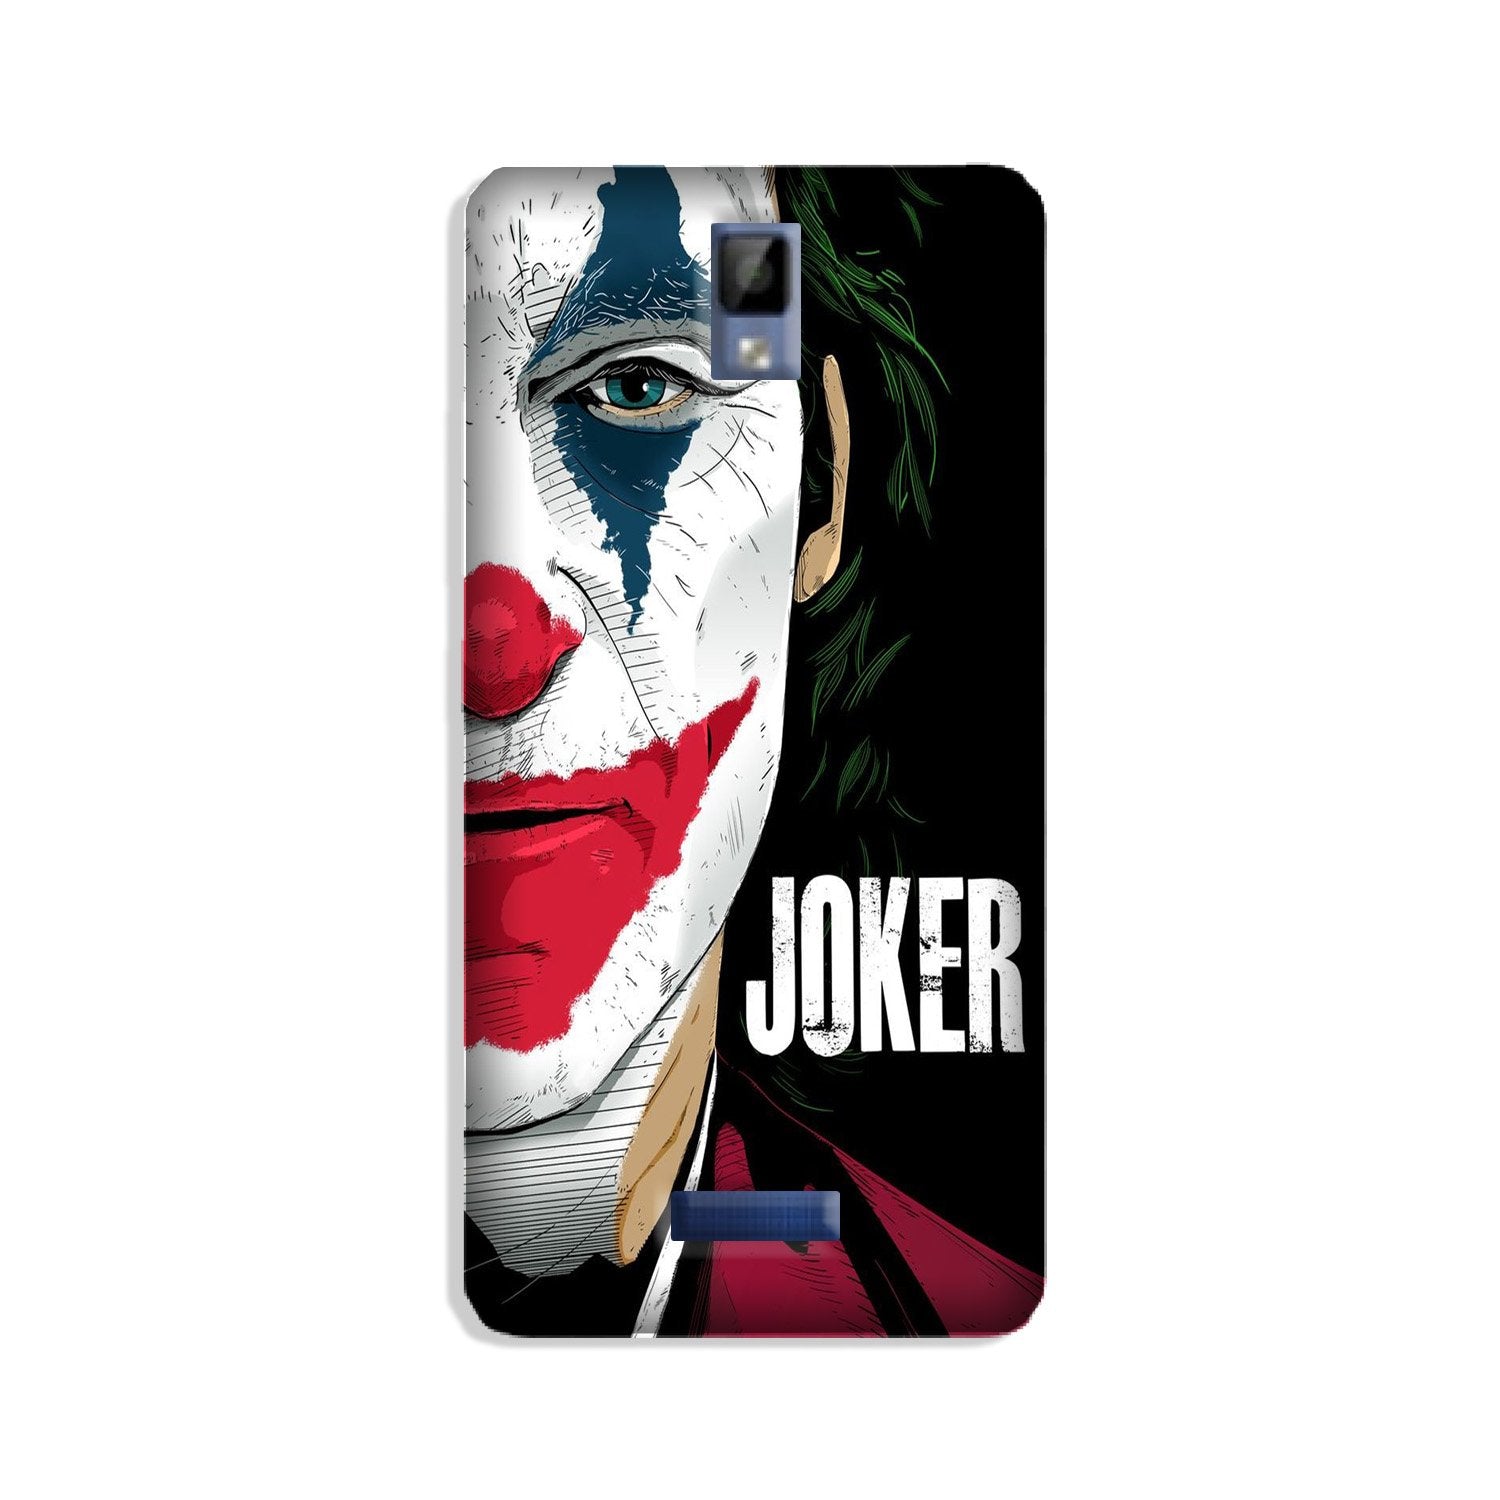 Joker Mobile Back Case for Gionee P7 (Design - 301)